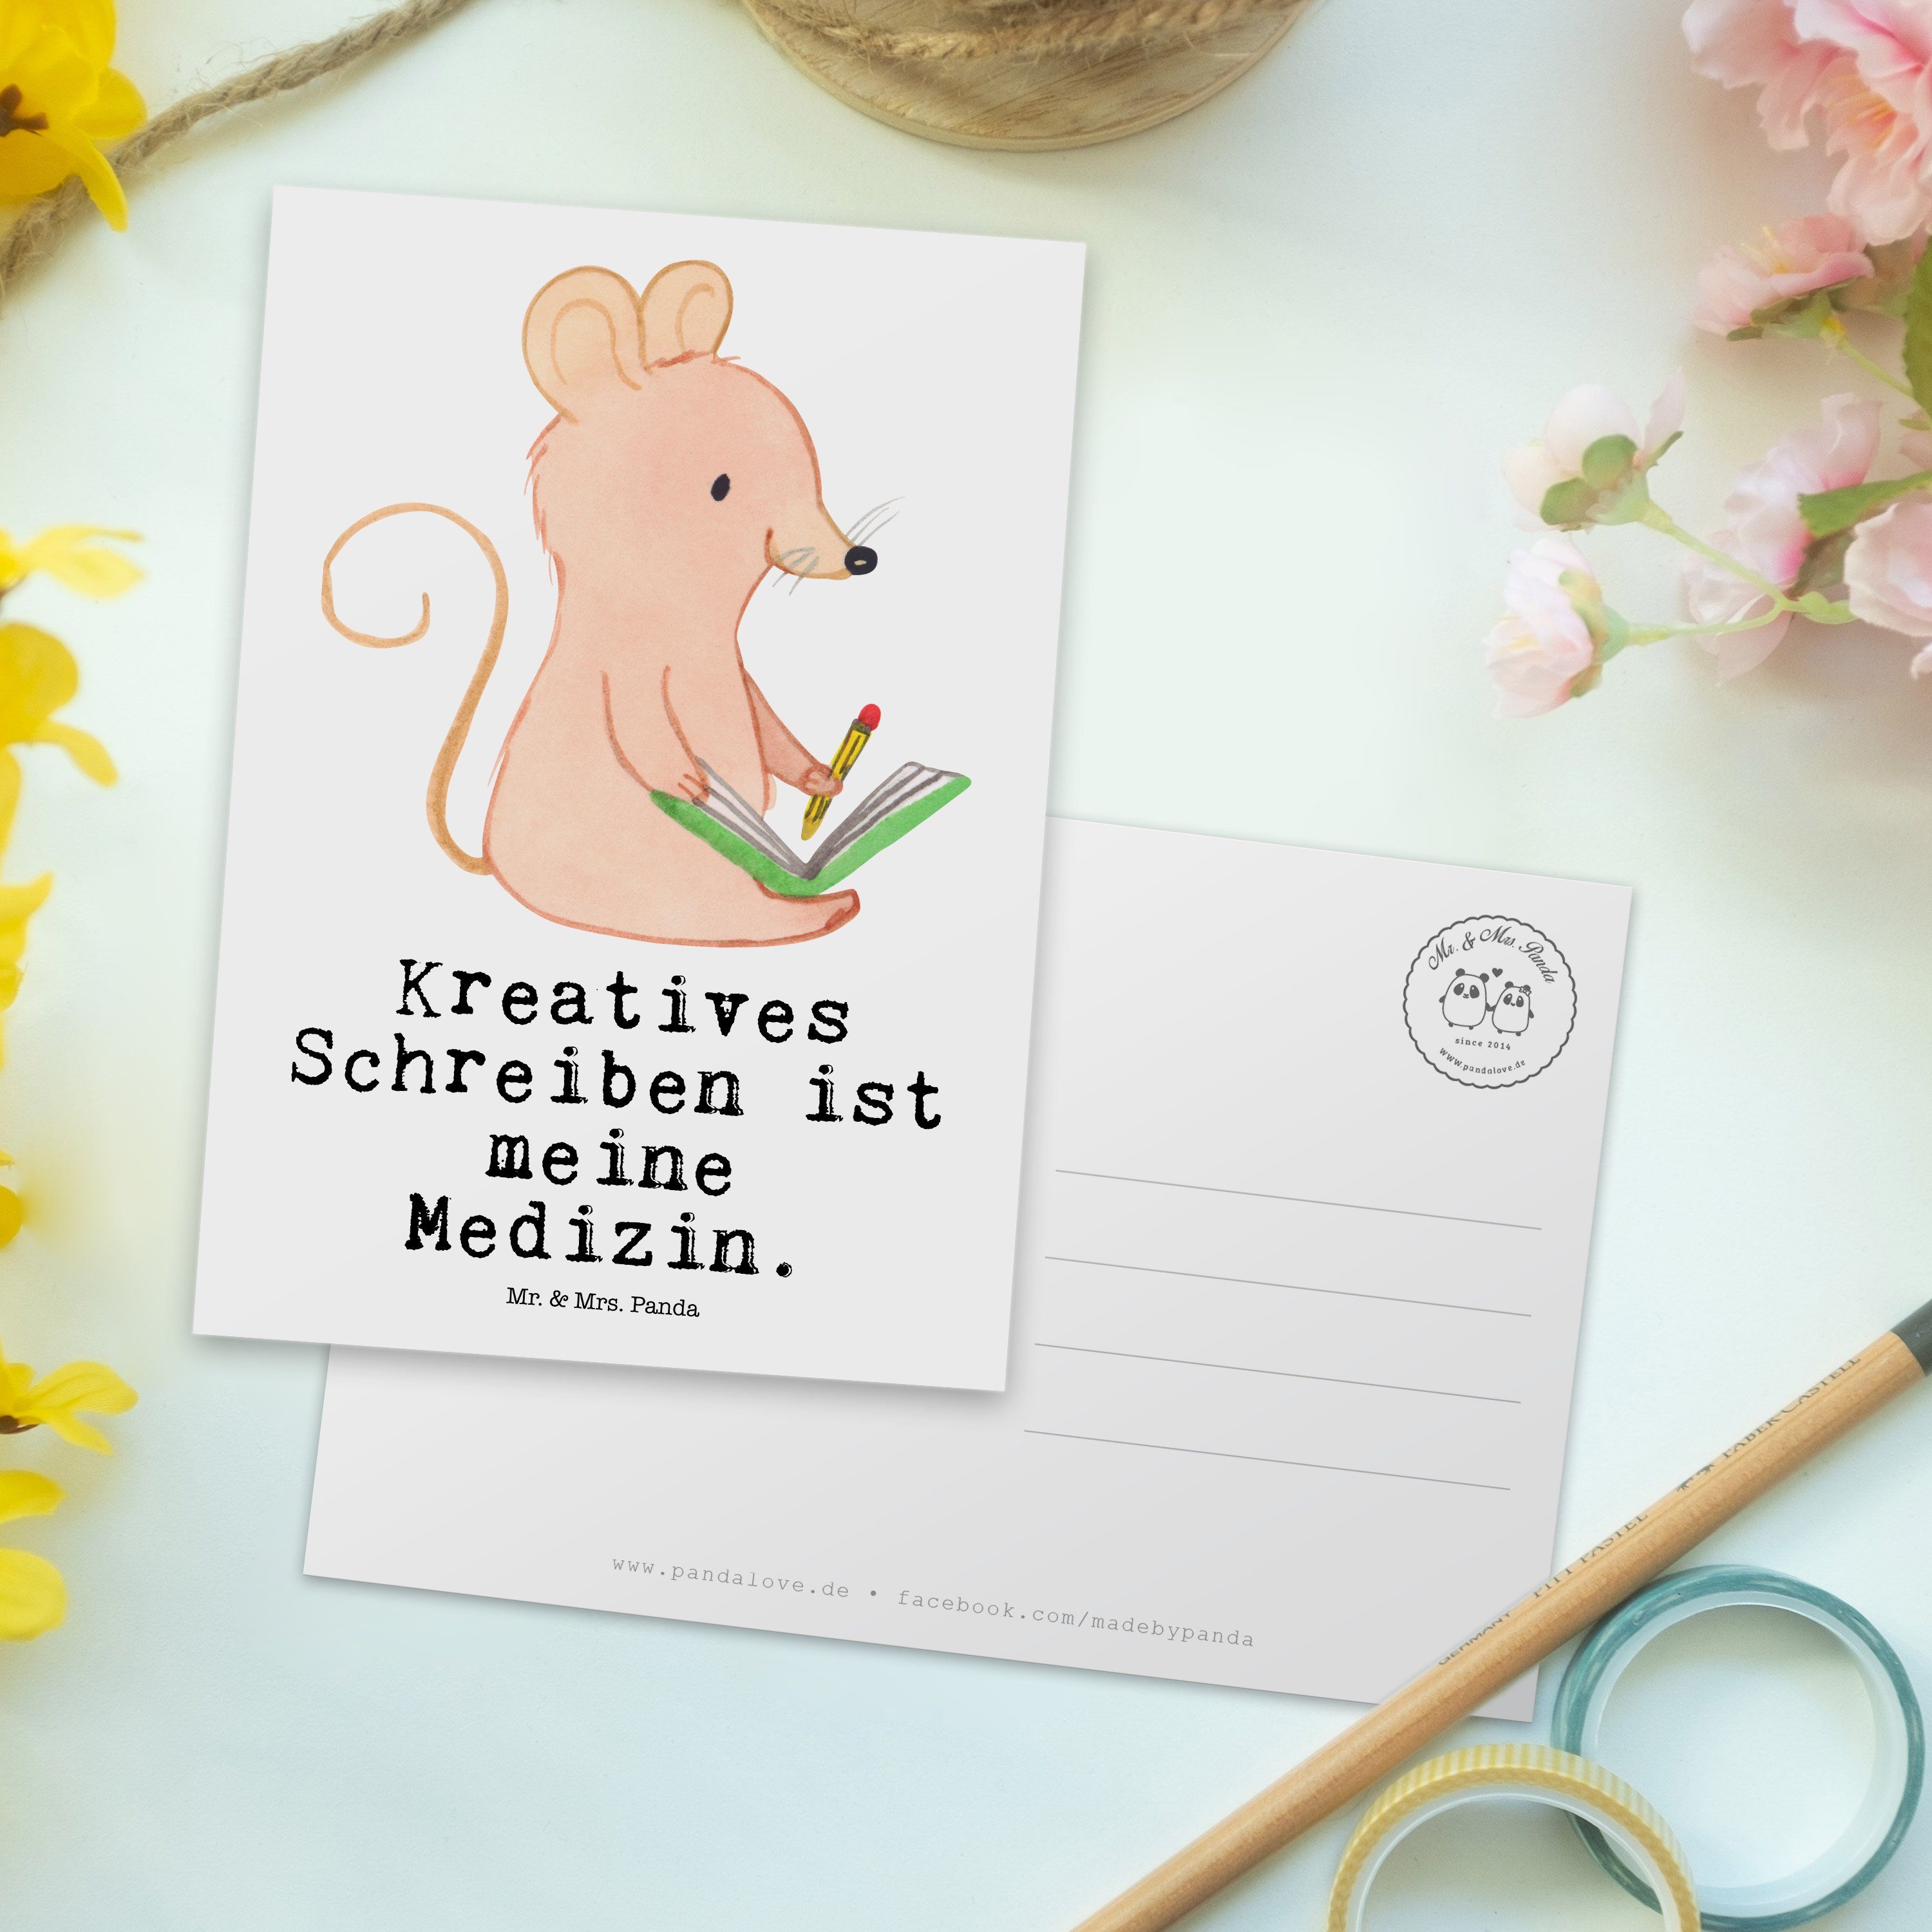 & Einl Mr. Kreatives Panda Schreiben Geschenk, Maus Medizin Weiß Postkarte - Mrs. Dankeskarte, -